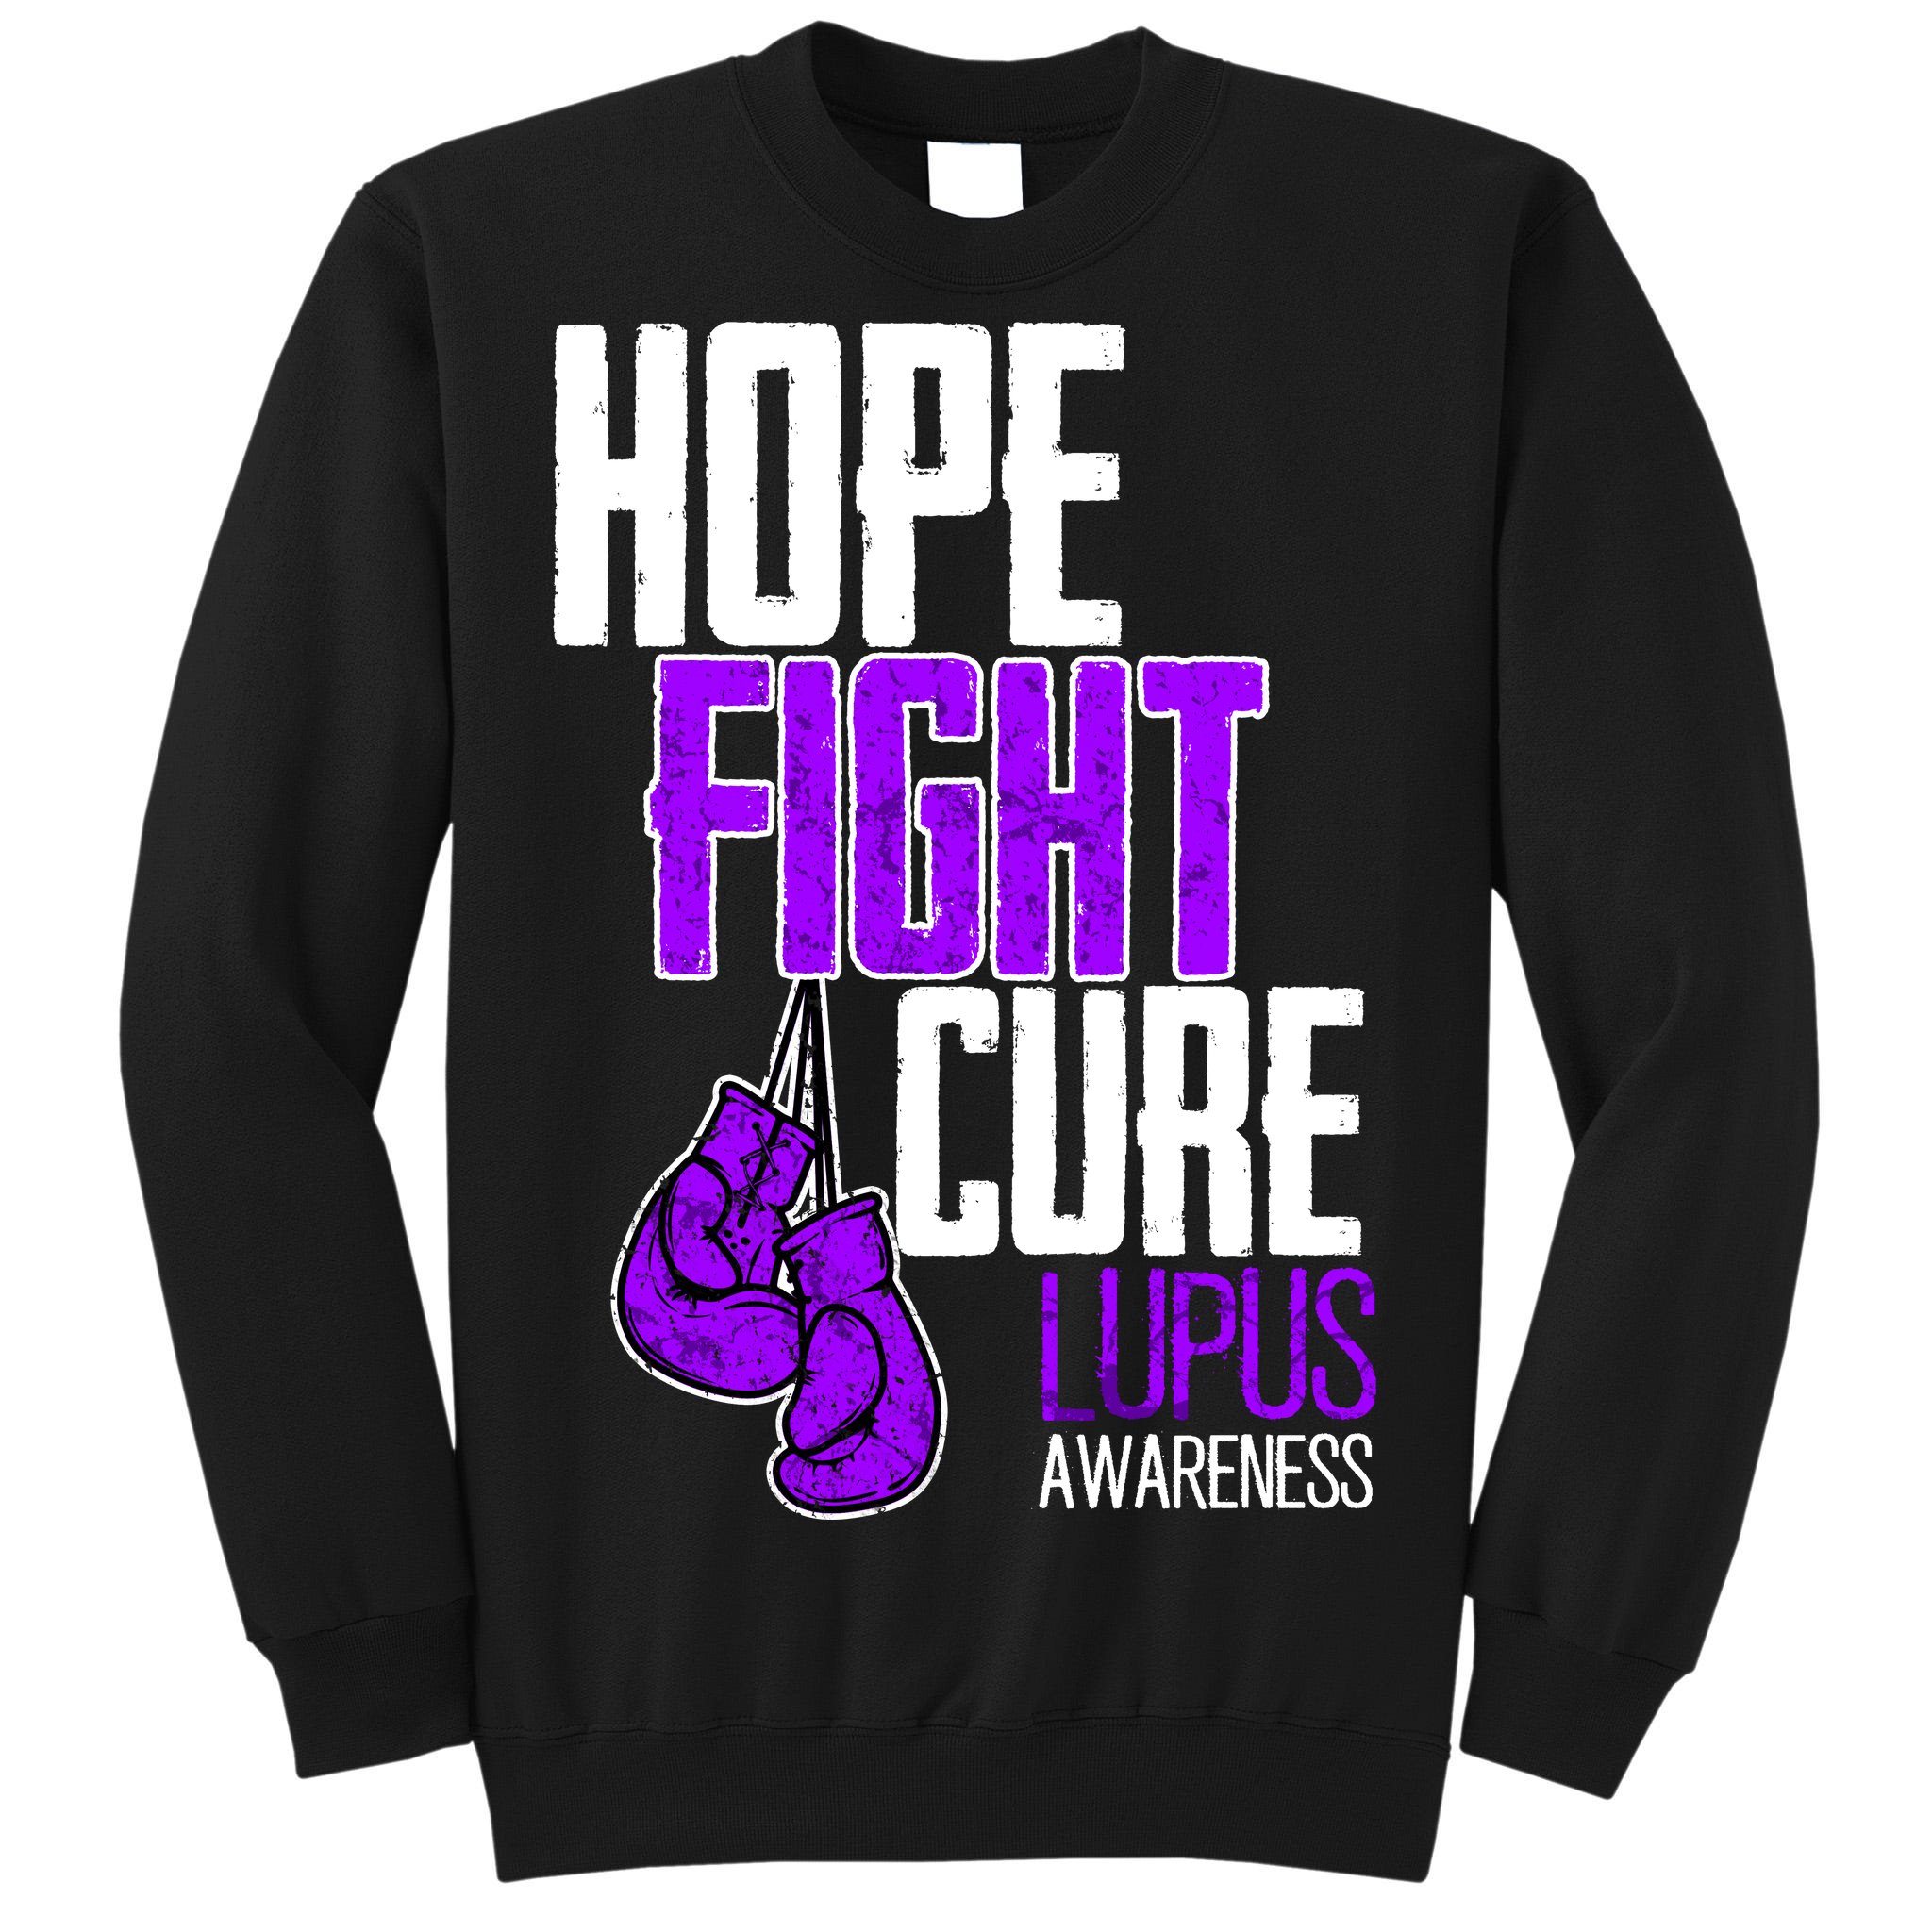 fight lupus